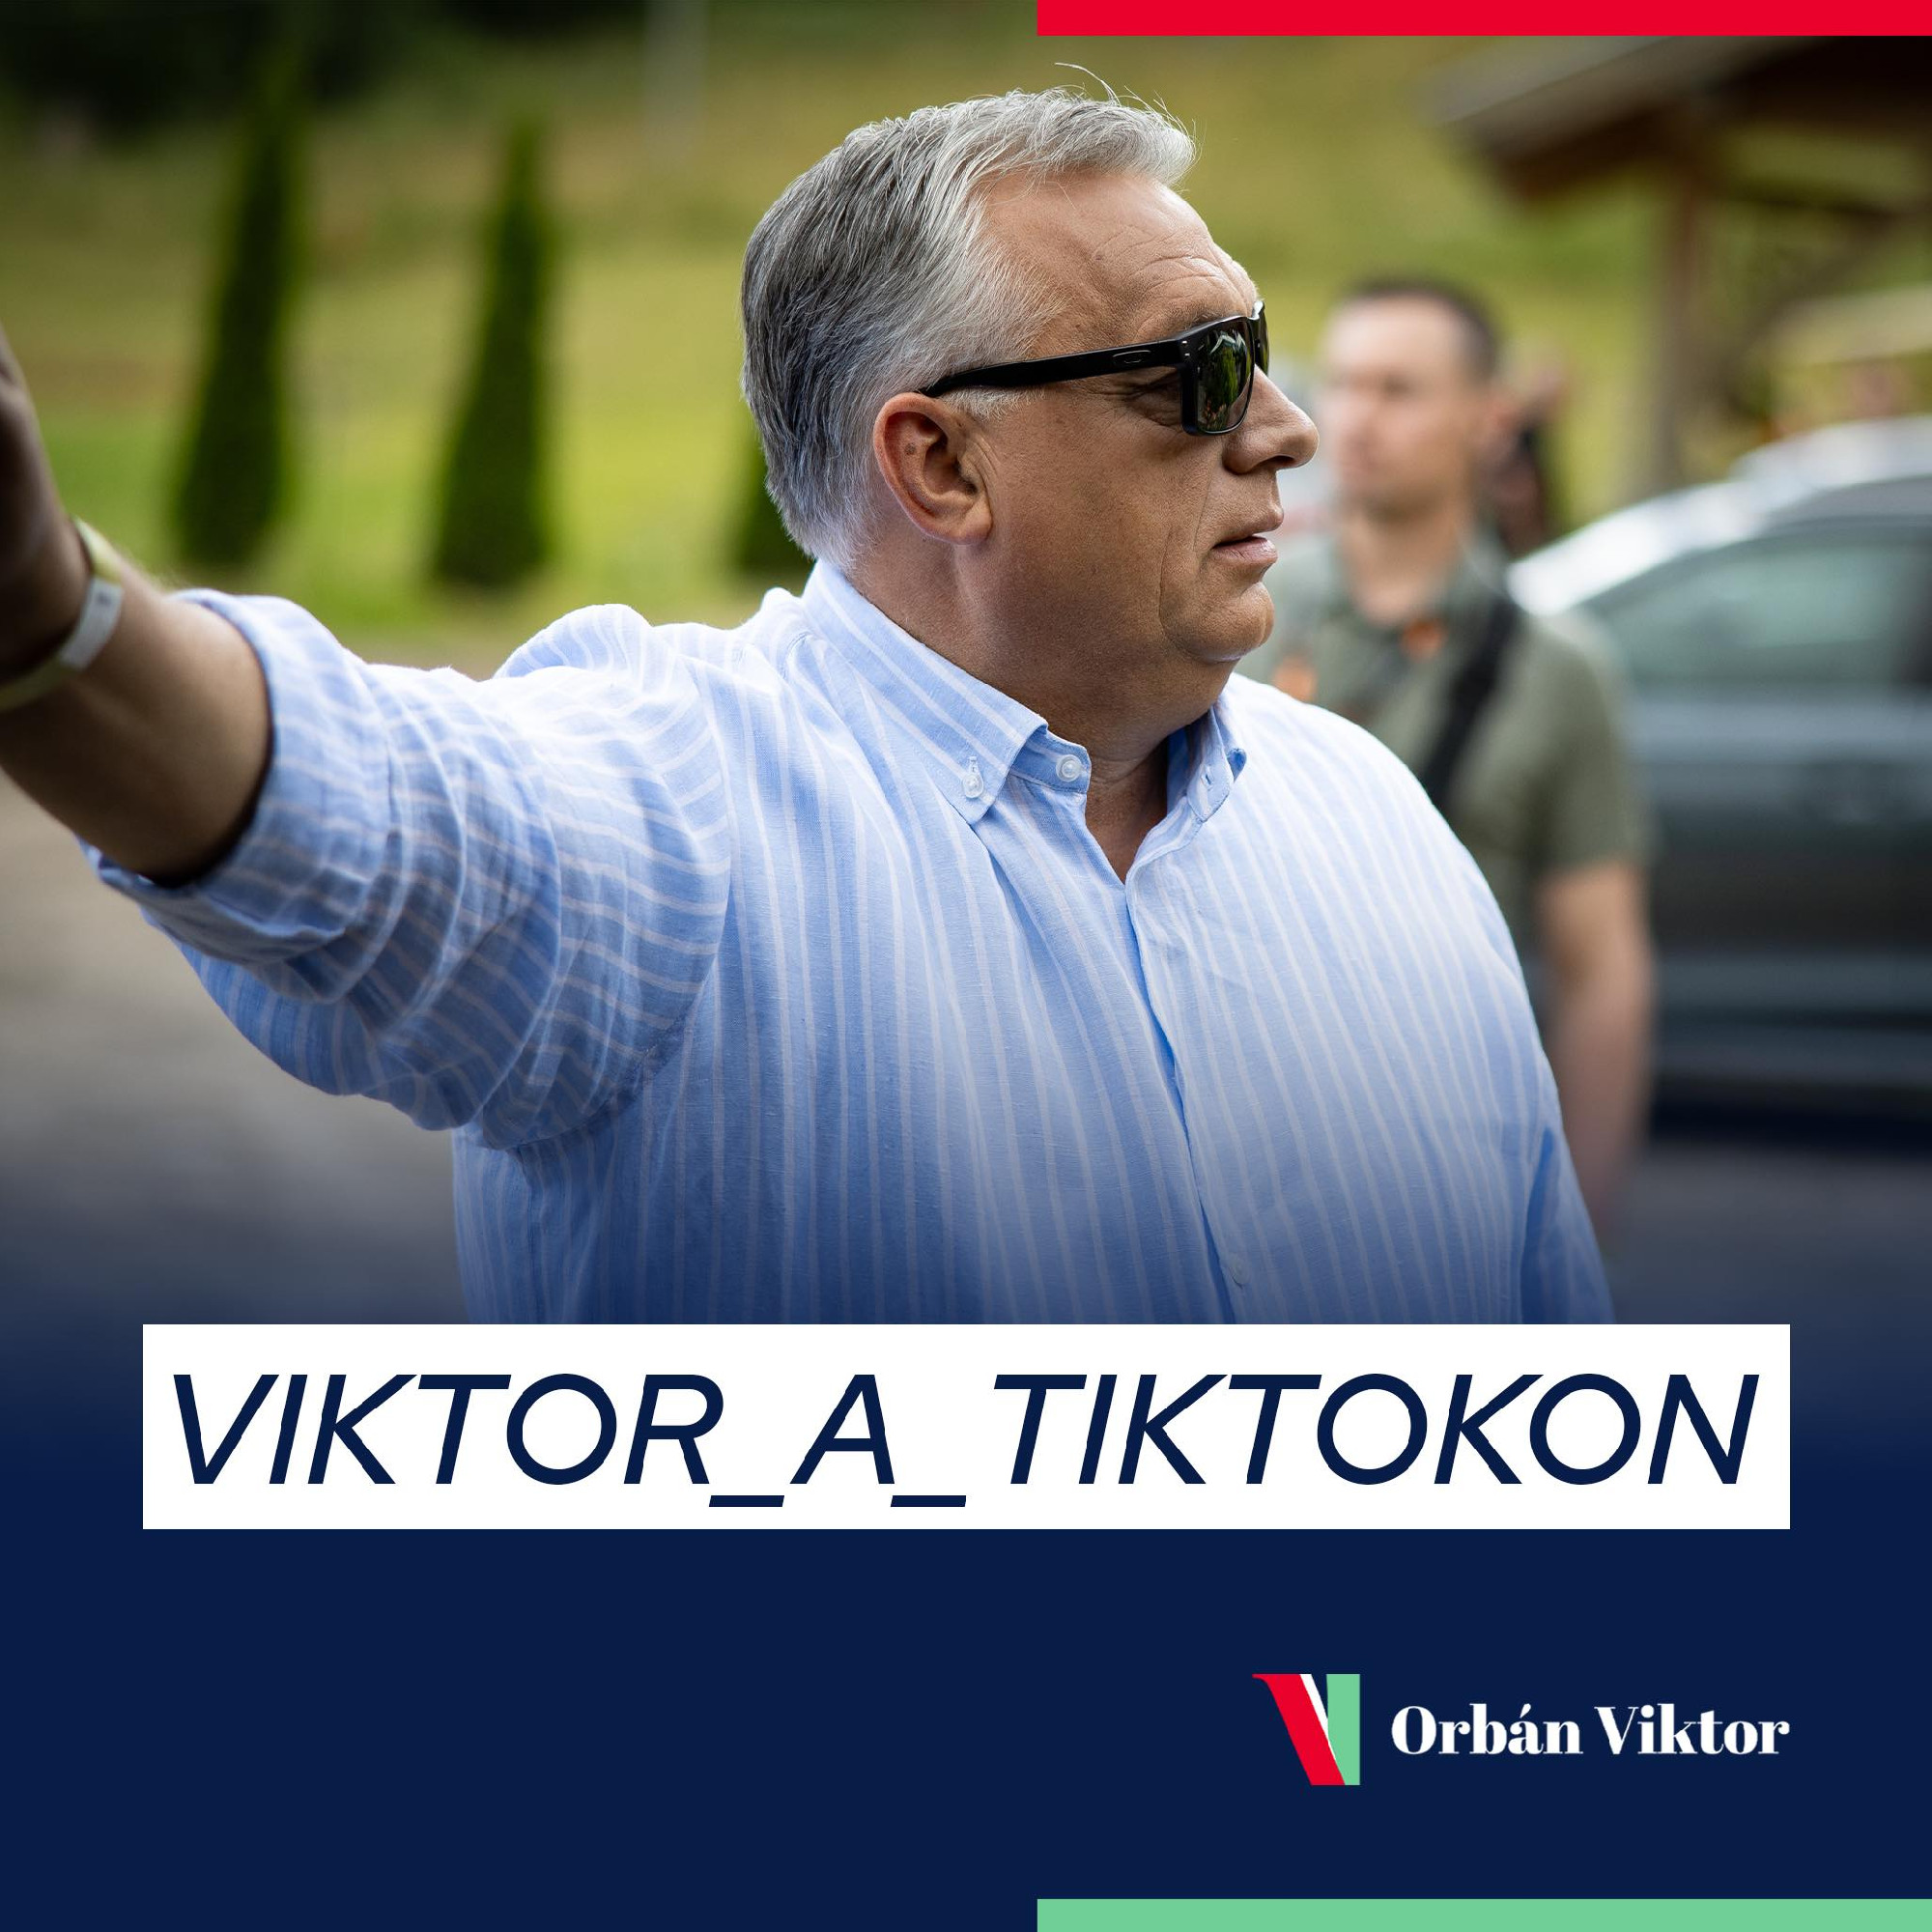  Orbán Viktor trükkös LMBTQ-találkozása